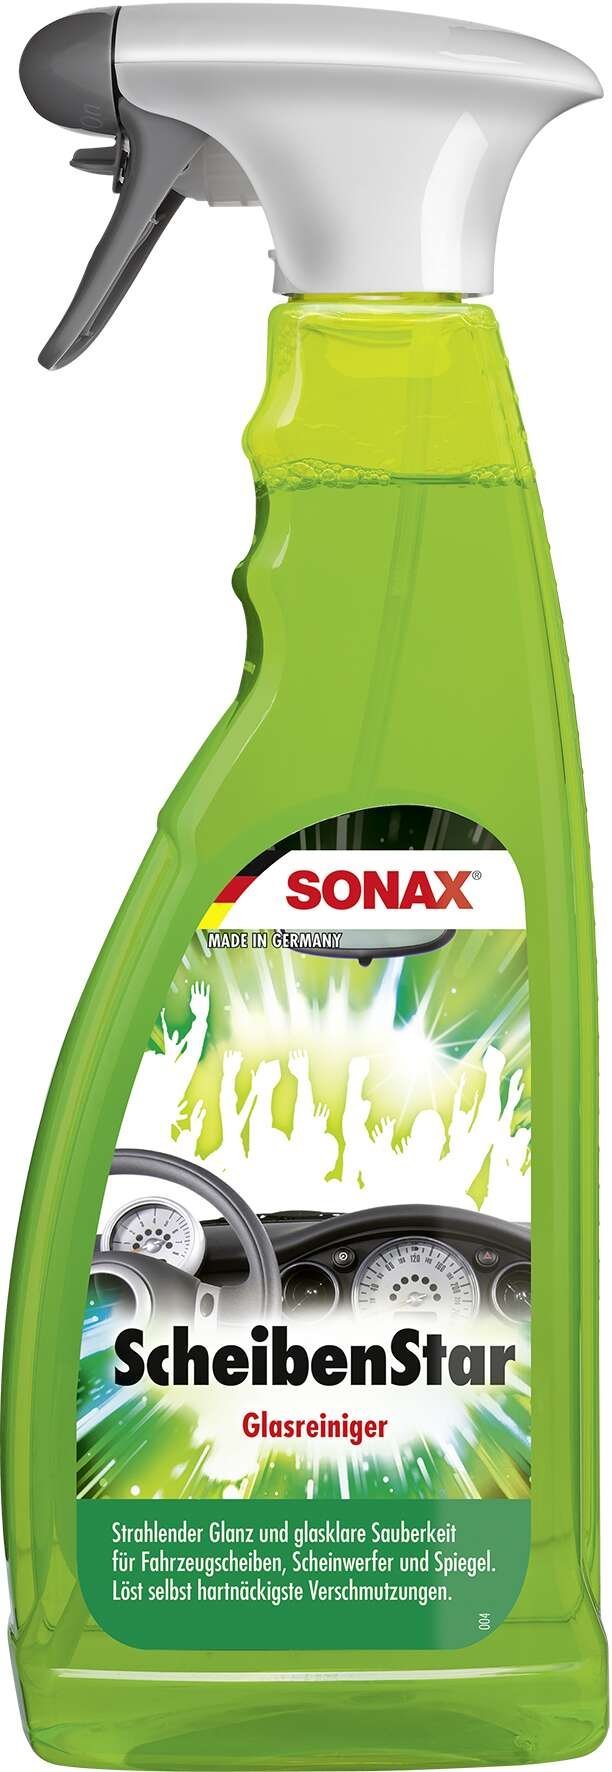 SONAX ScheibenStar PET spray bottle 750 ml glass cleaner